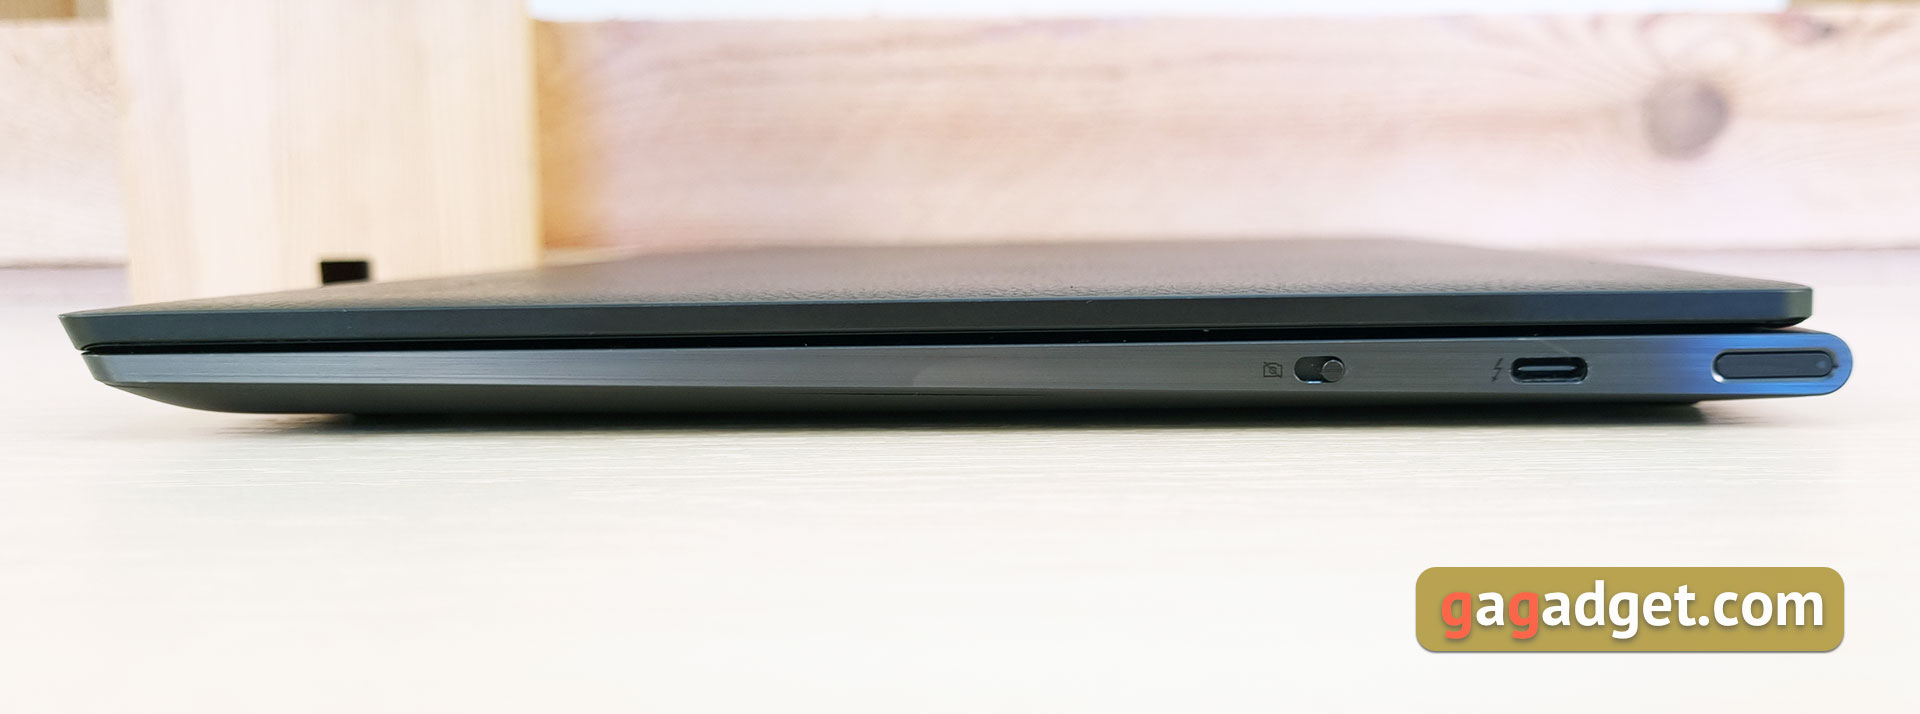 Обзор ноутбука Lenovo YOGA Slim 9i: командный центр бизнеса-12